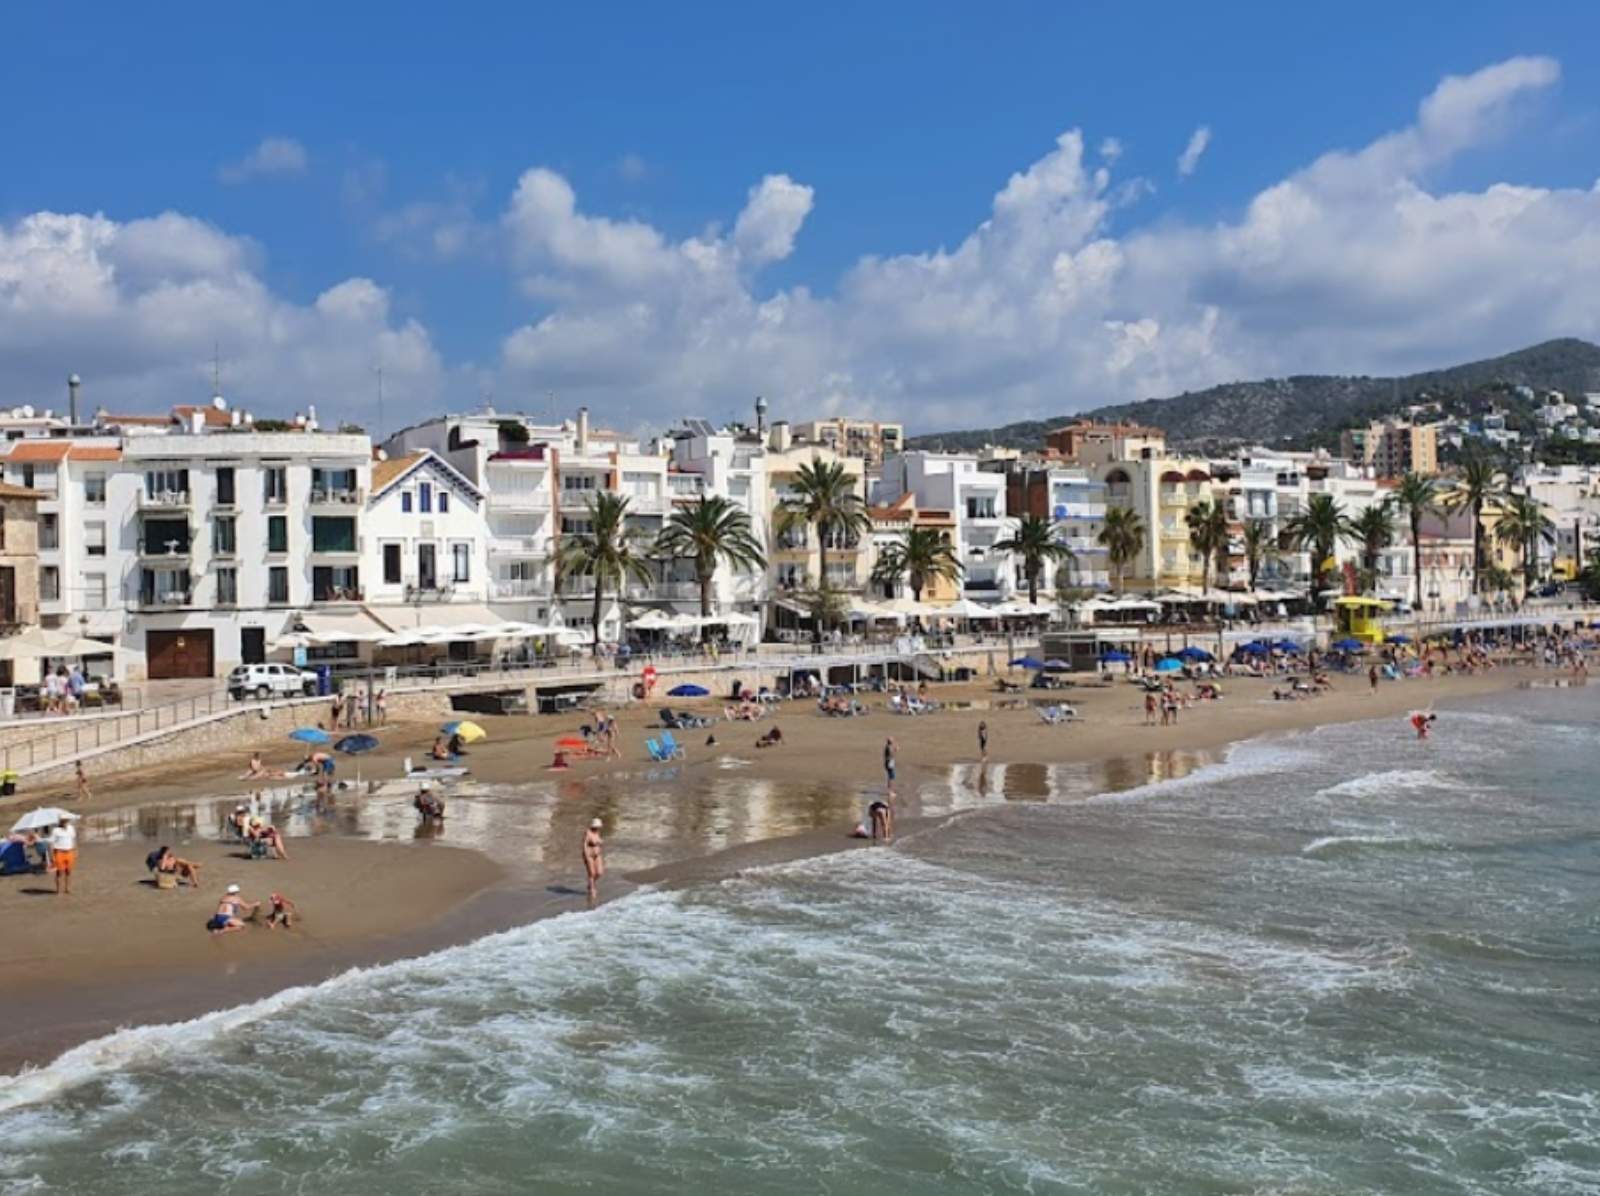 Apareix un cadàver surant a la platja a Sitges: la policia investiga qui és i què ha passat